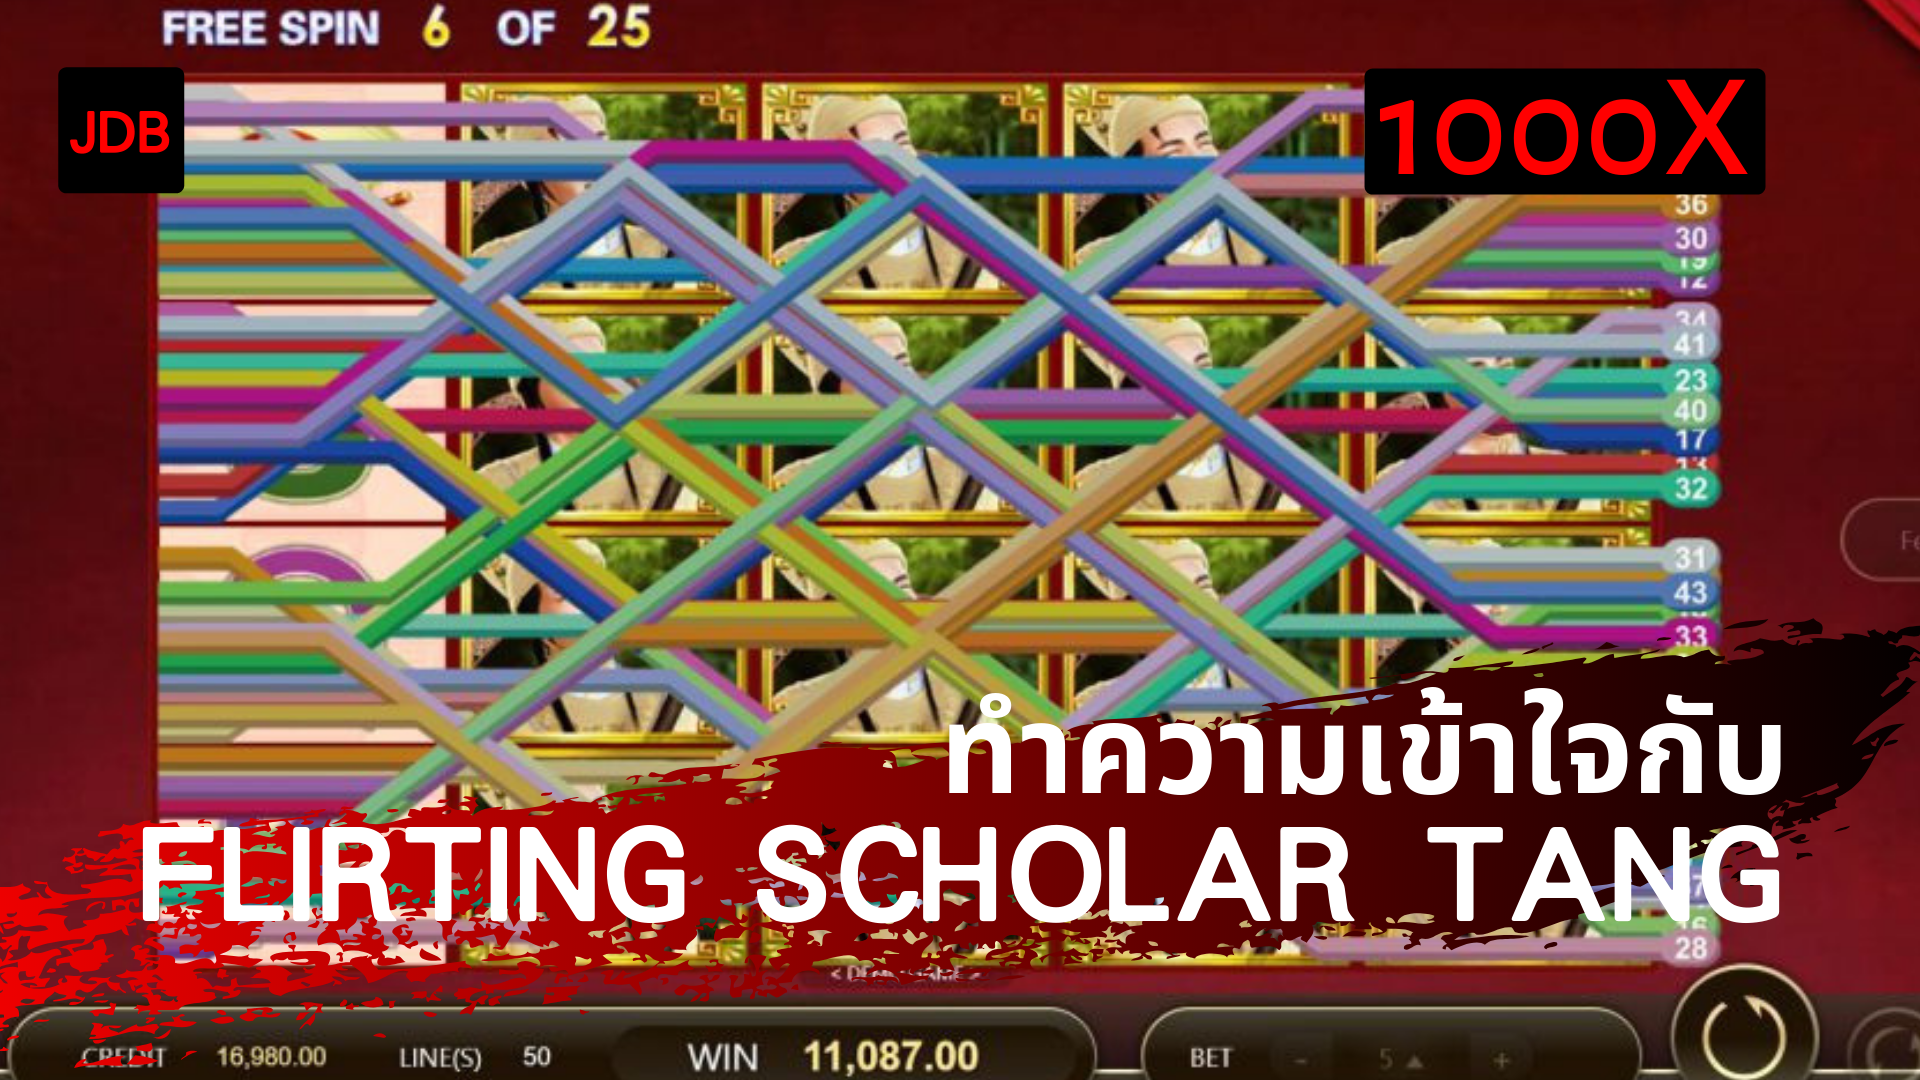 【JDB Flirting Scholar Tang】คอลัมน์เกมเดย์ Pay69 slotgame เกมสล็อต 4